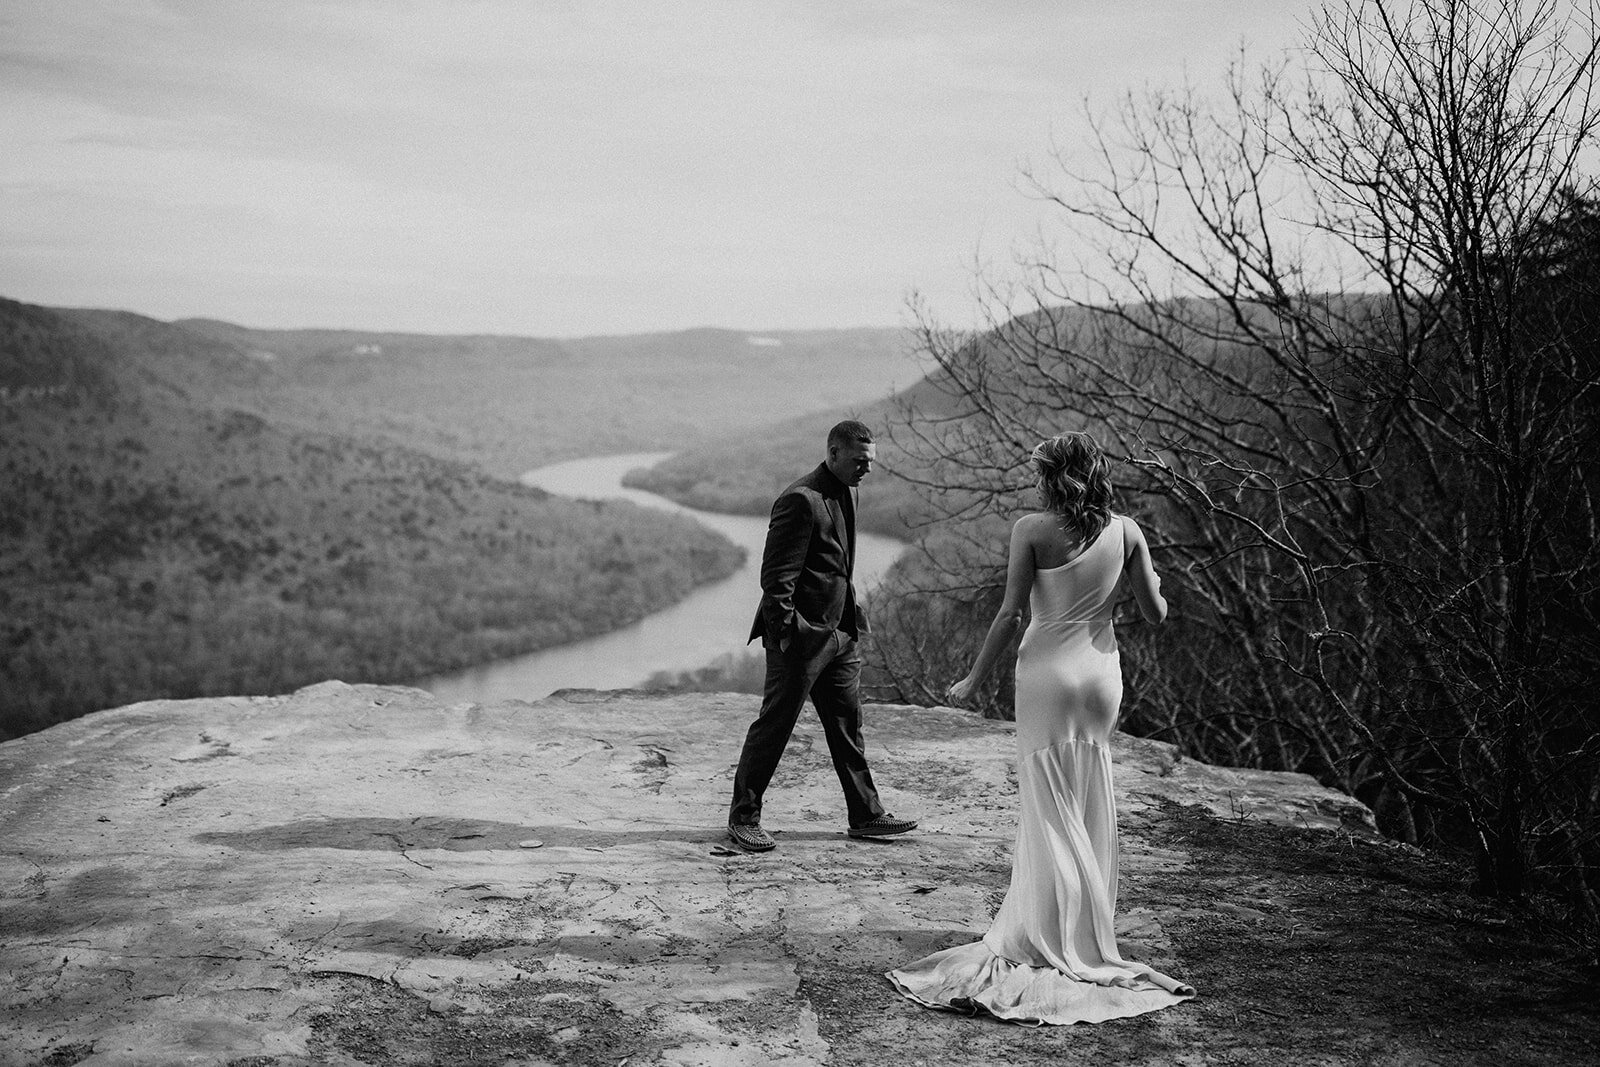 snoopers-rock-adventure-elopement-chattanooga-wedding-photographerfoster-falls-elopement-chattanooga-wedding-photographer-406_websize.jpg